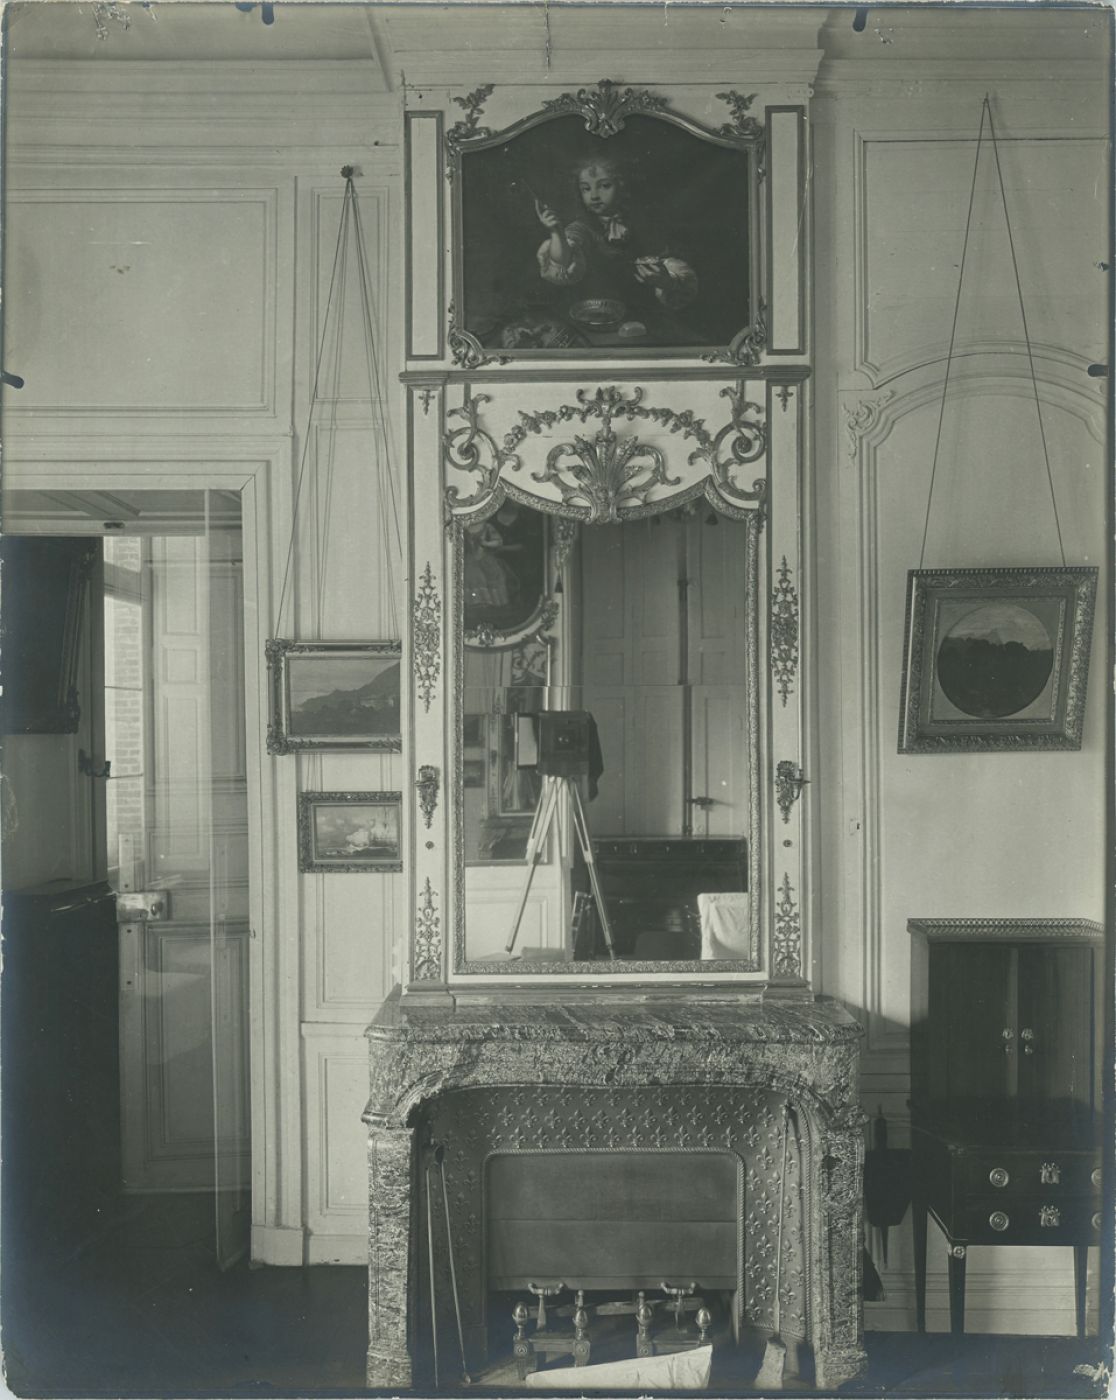 Anonymous, “L’appareil dans le miroir”, 1890 ca.